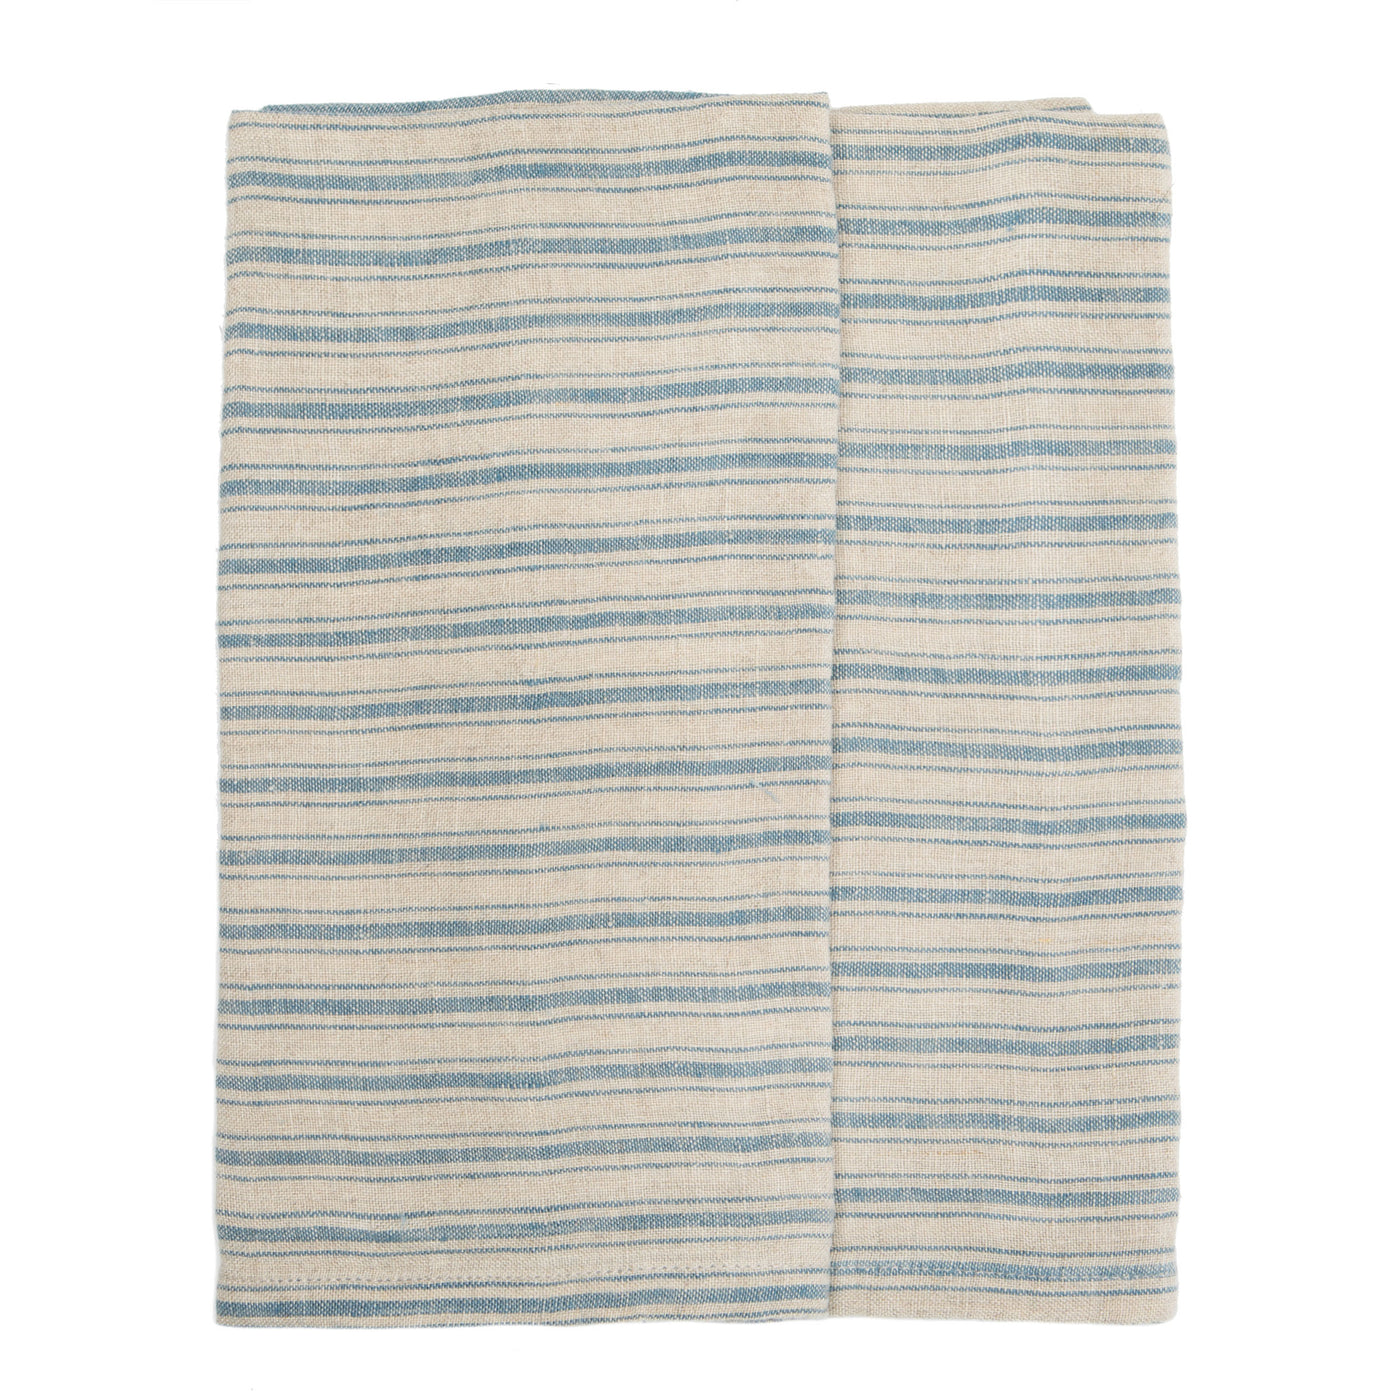 Boat Stripe Linen  Kitchen Towels Natural & Blue, Set of 2